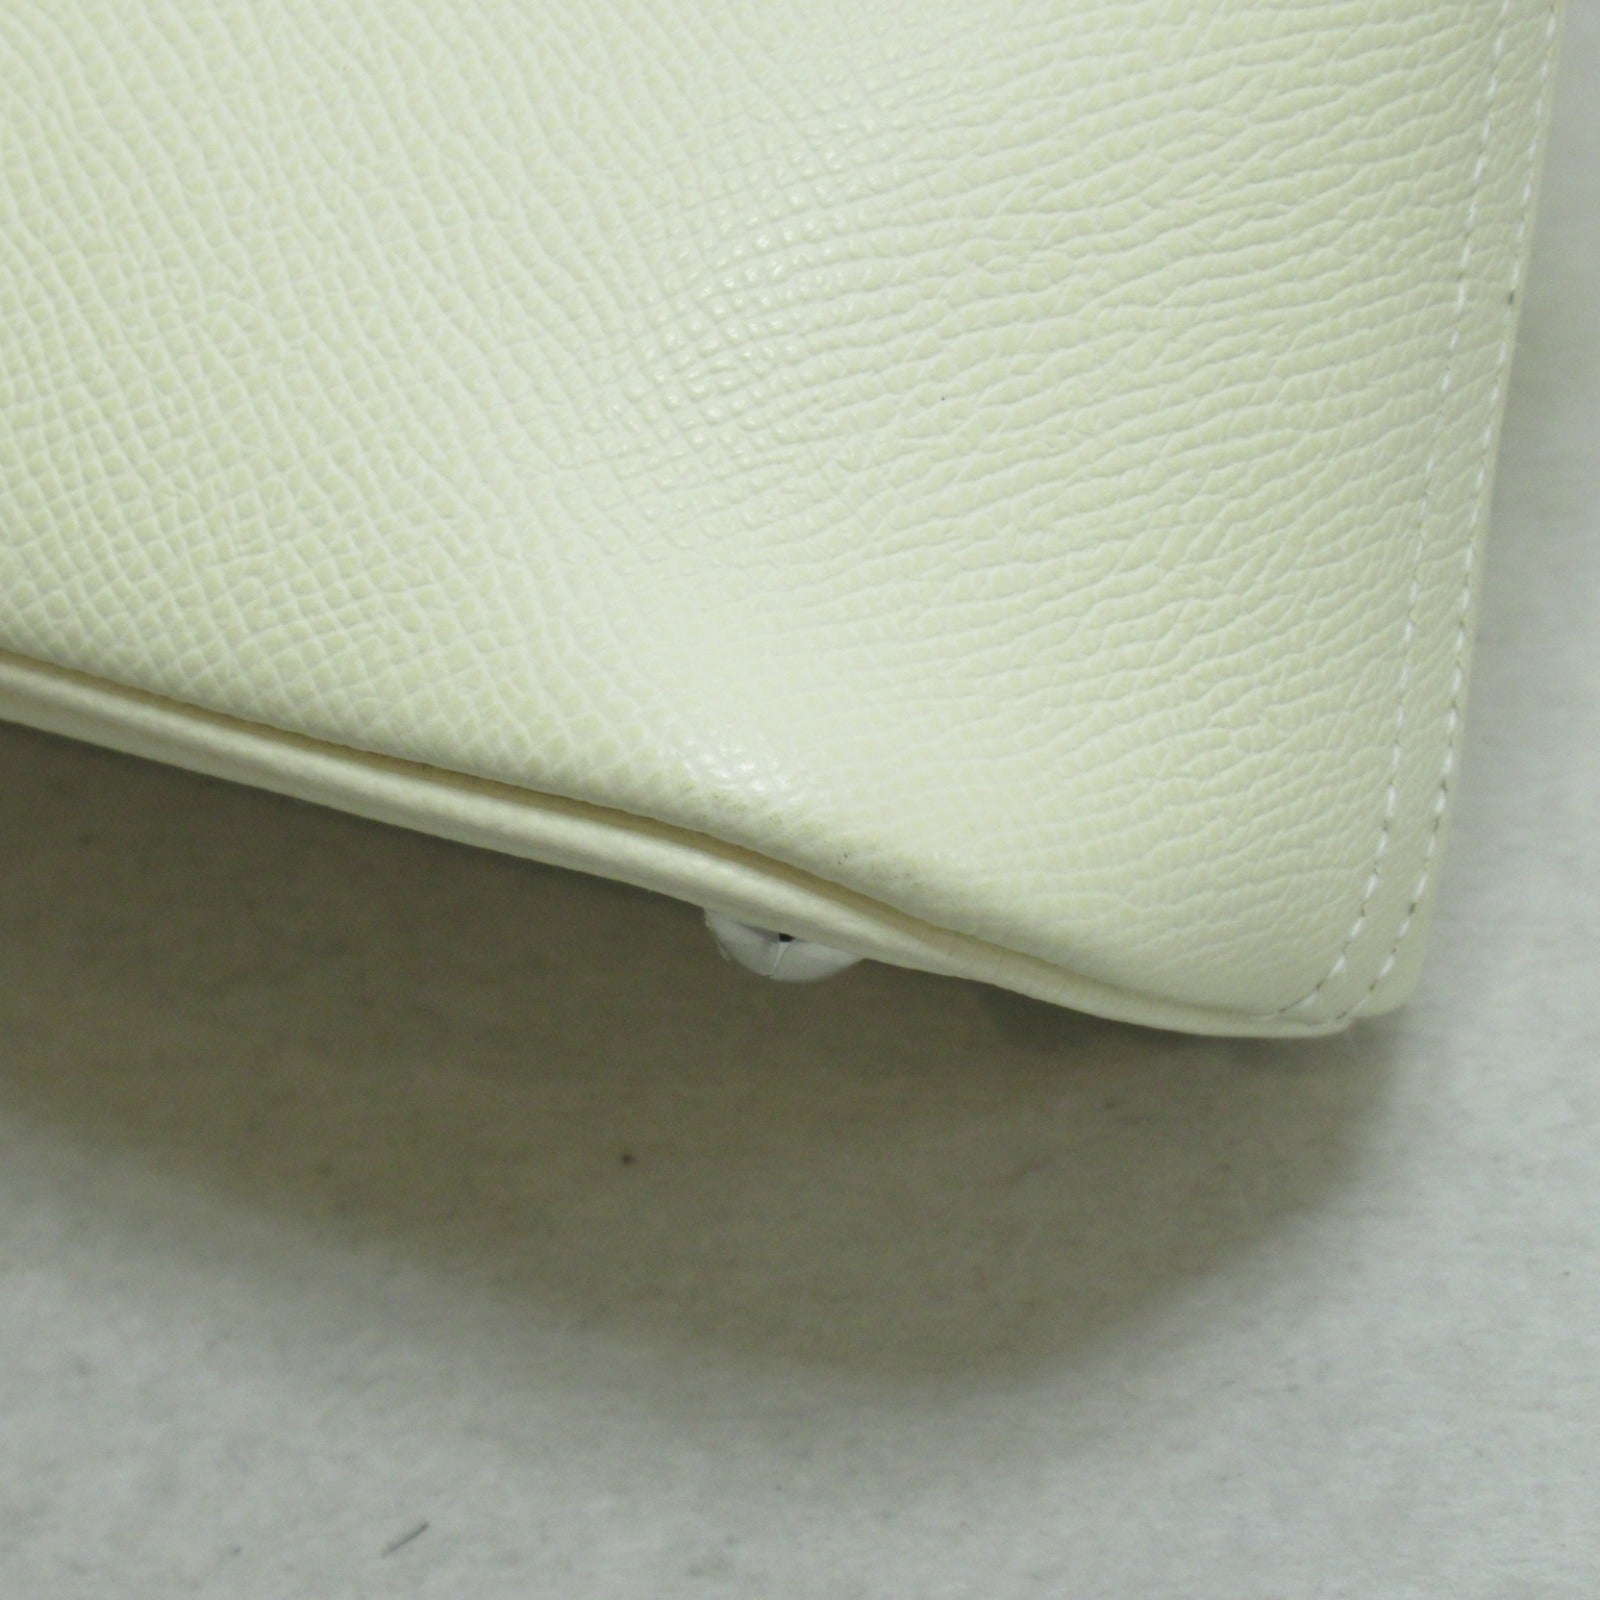 Hermes Hermes Bolide 27 Nata Handbag Handbag Handbag Leather Epsom  White 041693CK